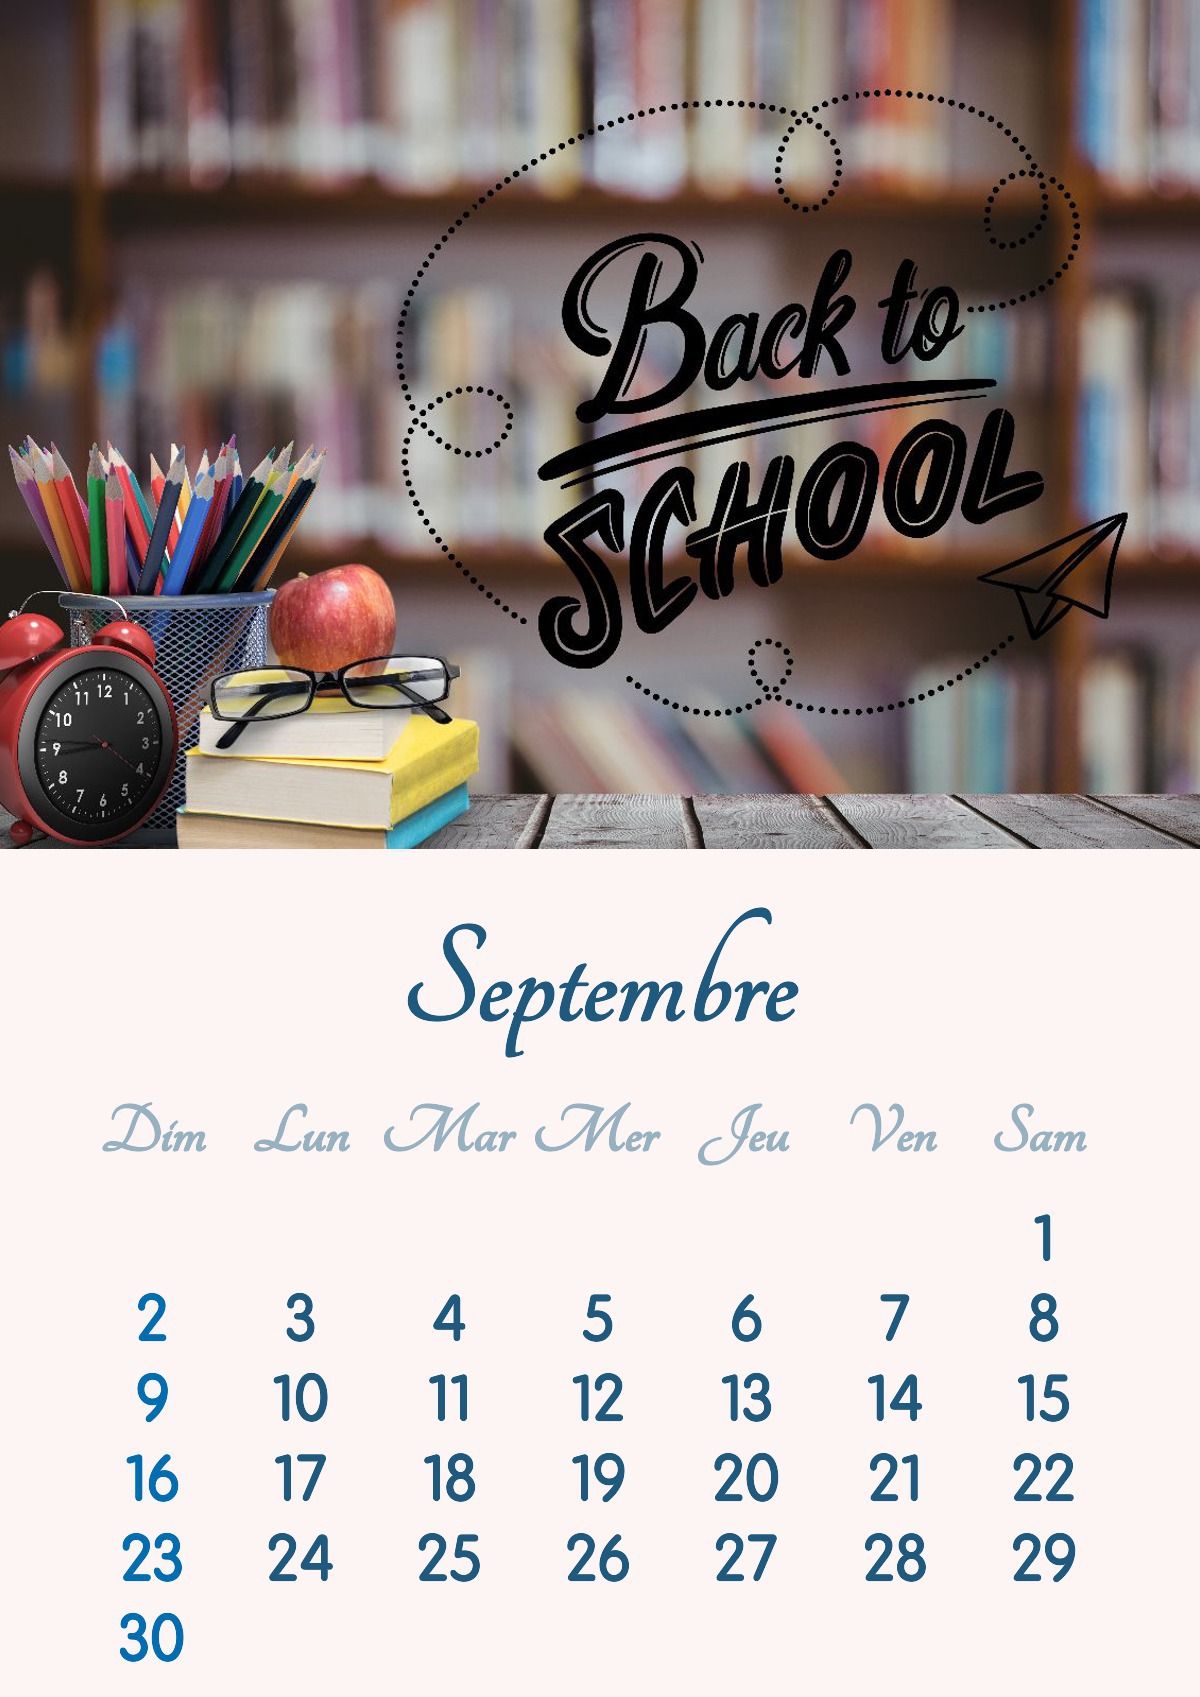 Kalenderen for september 2018 kan skrives ut i A4-format Fotomontasje